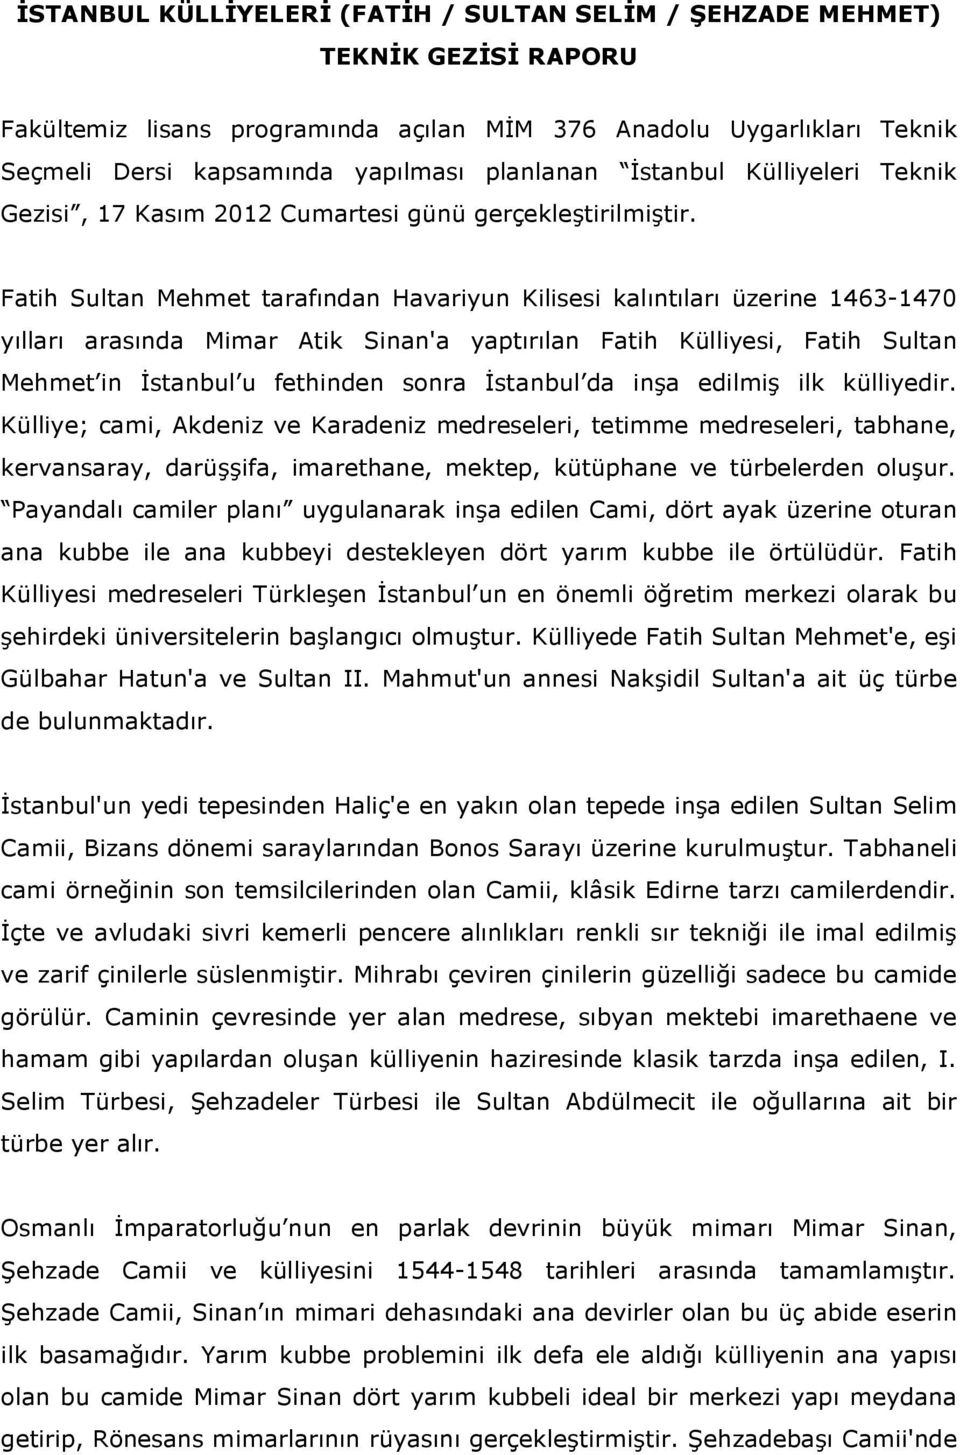 Fatih Sultan Mehmet tarafından Havariyun Kilisesi kalıntıları üzerine 1463-1470 yılları arasında Mimar Atik Sinan'a yaptırılan Fatih Külliyesi, Fatih Sultan Mehmet in Đstanbul u fethinden sonra